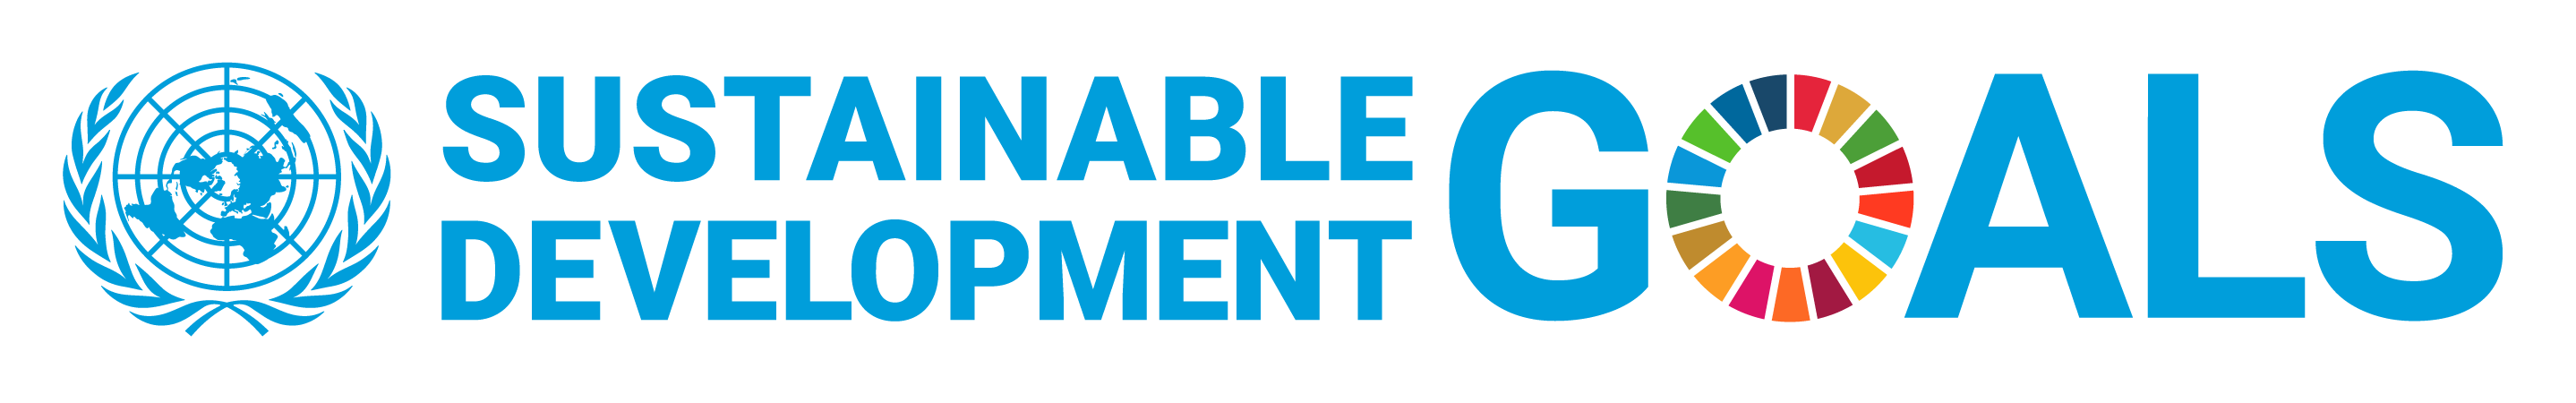 E_SDG_logo_UN_emblem_horizontal_trans_WEB.png